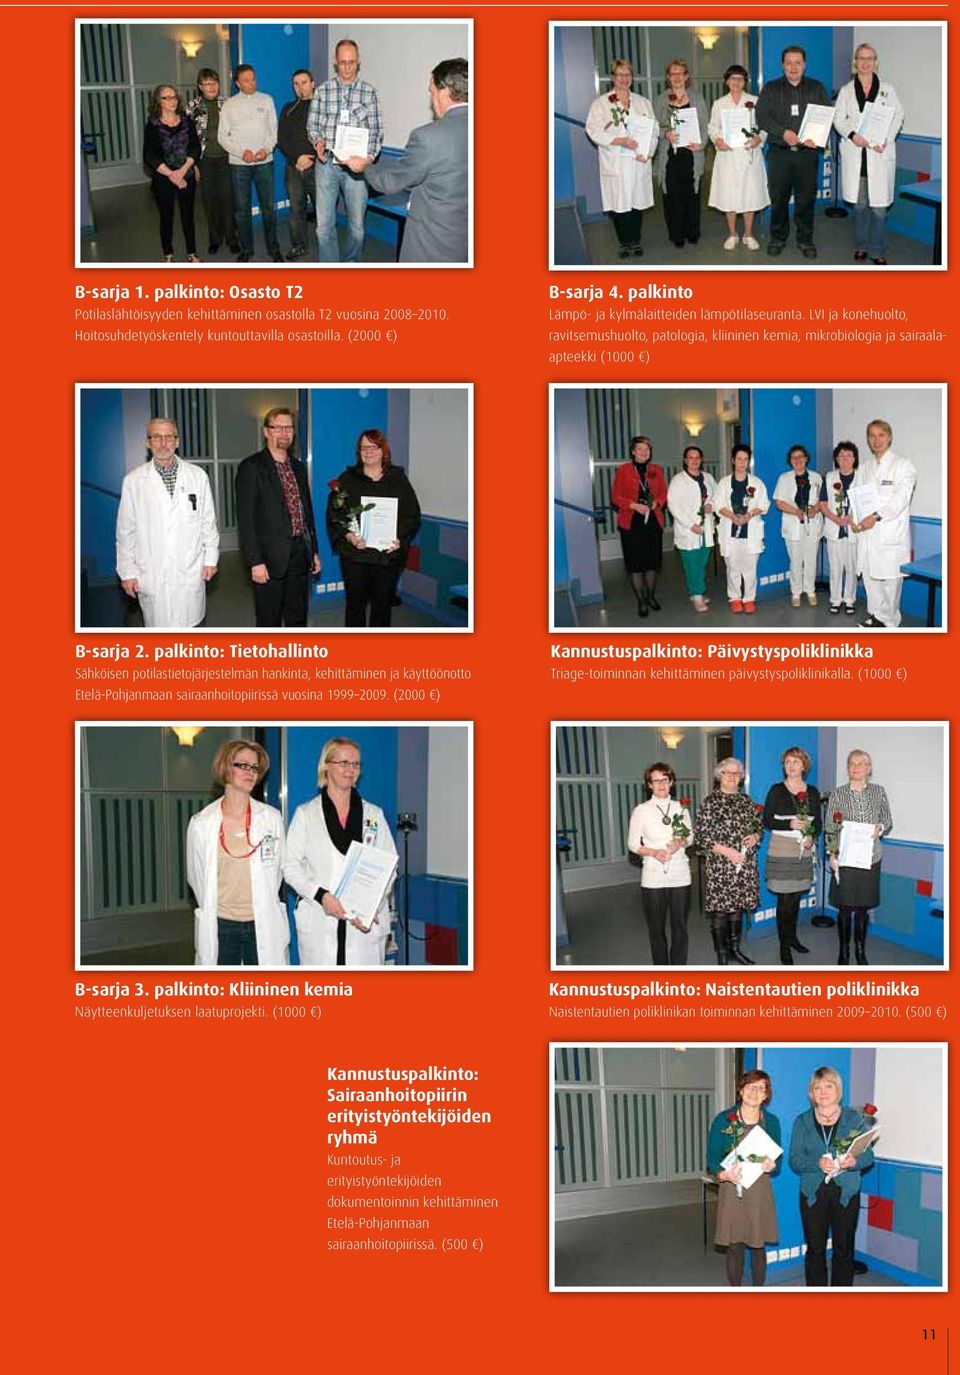 palkinto: Tietohallinto Sähköisen potilastietojärjestelmän hankinta, kehittäminen ja käyttöönotto Etelä-Pohjanmaan sairaanhoitopiirissä vuosina 1999 2009.